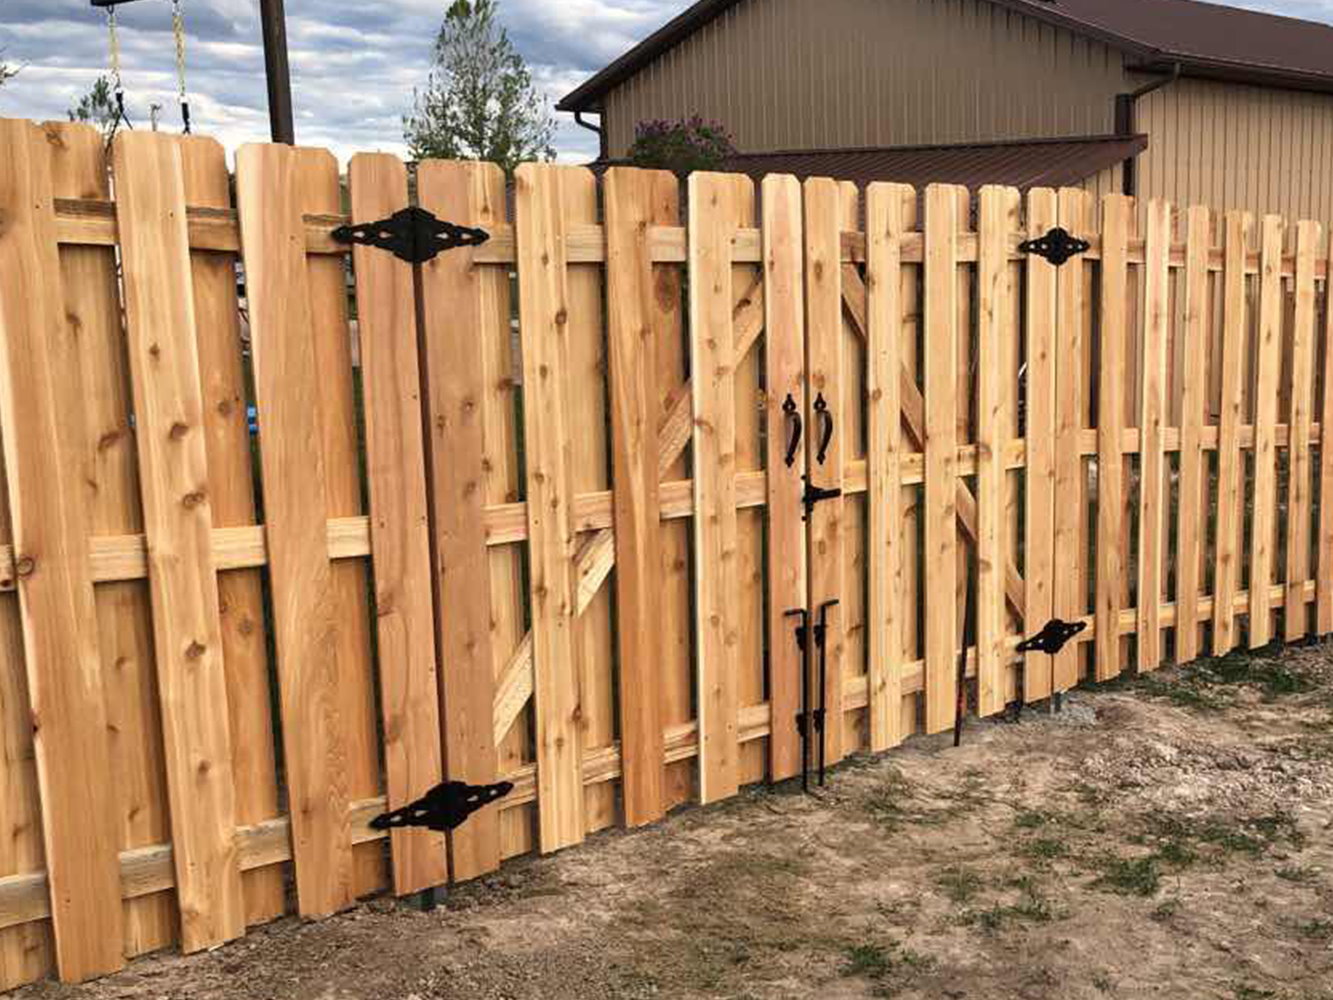 Saratoga WY Shadowbox style wood fence